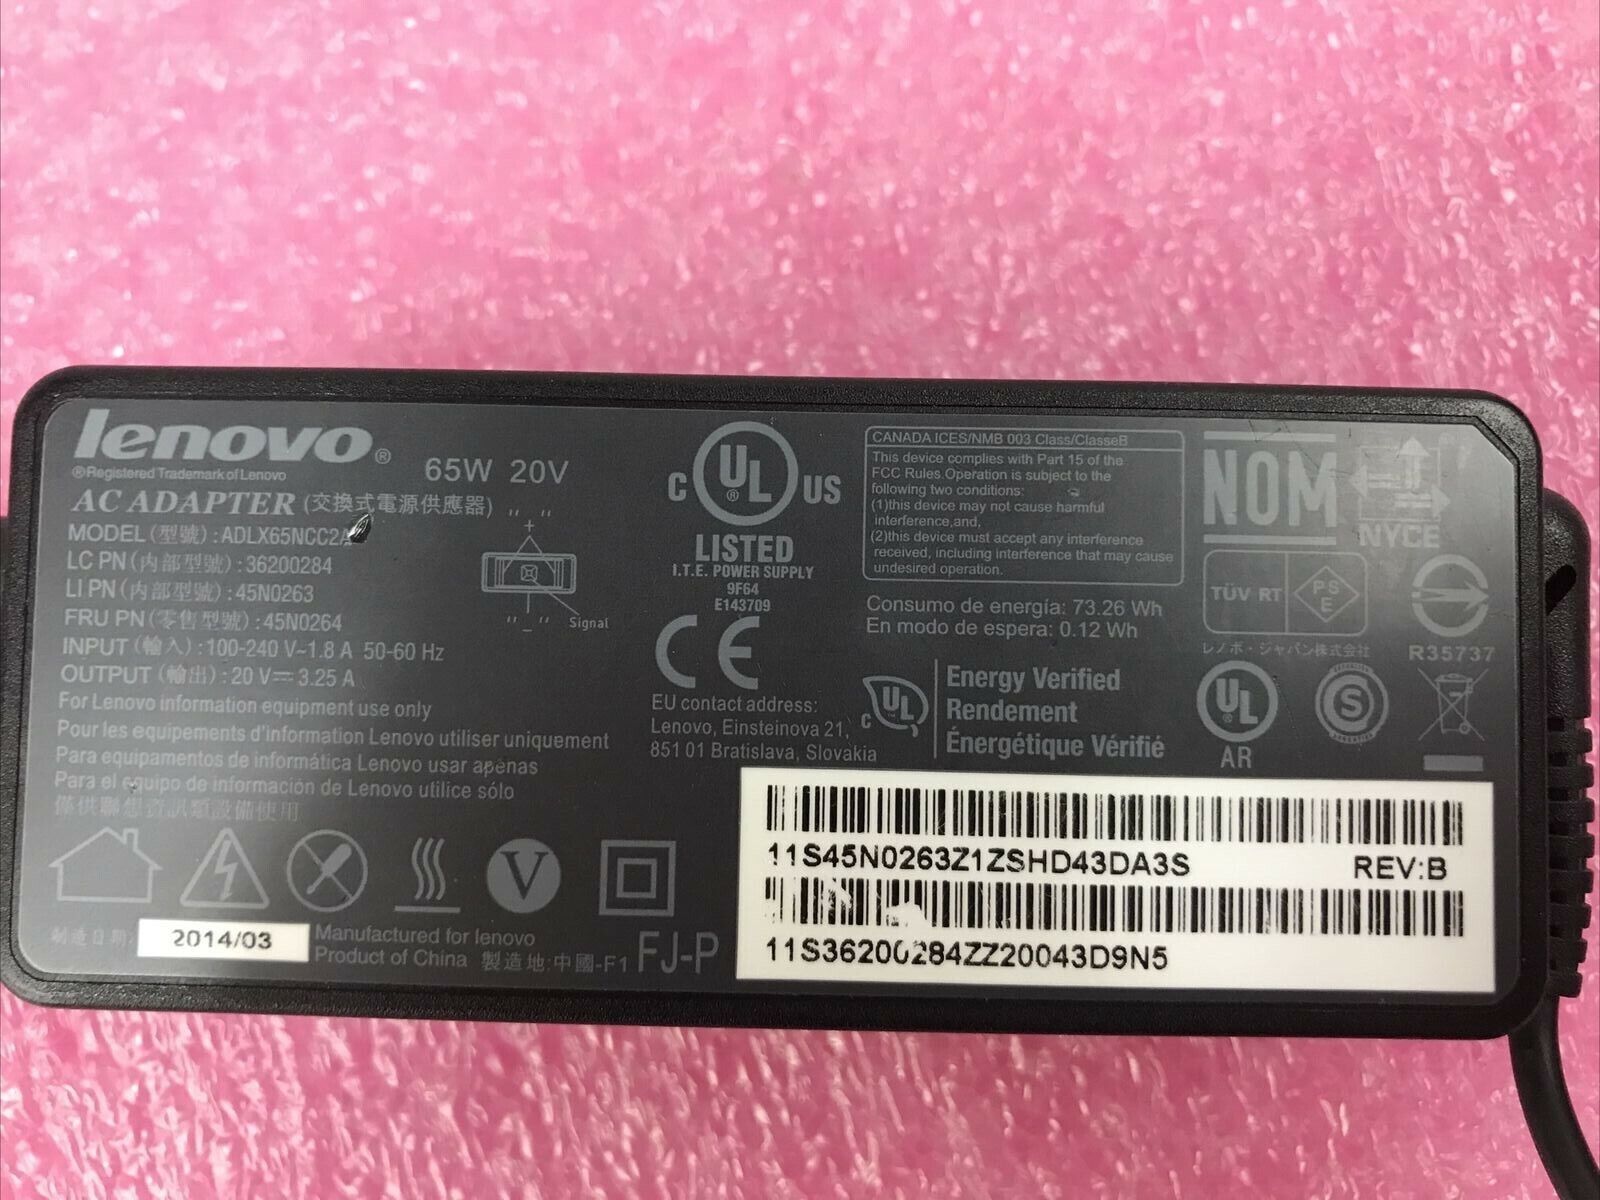 Genuine Lenovo AC Adapter Charger 65W 20V 3.25A ADLX65NCC2A 36200284